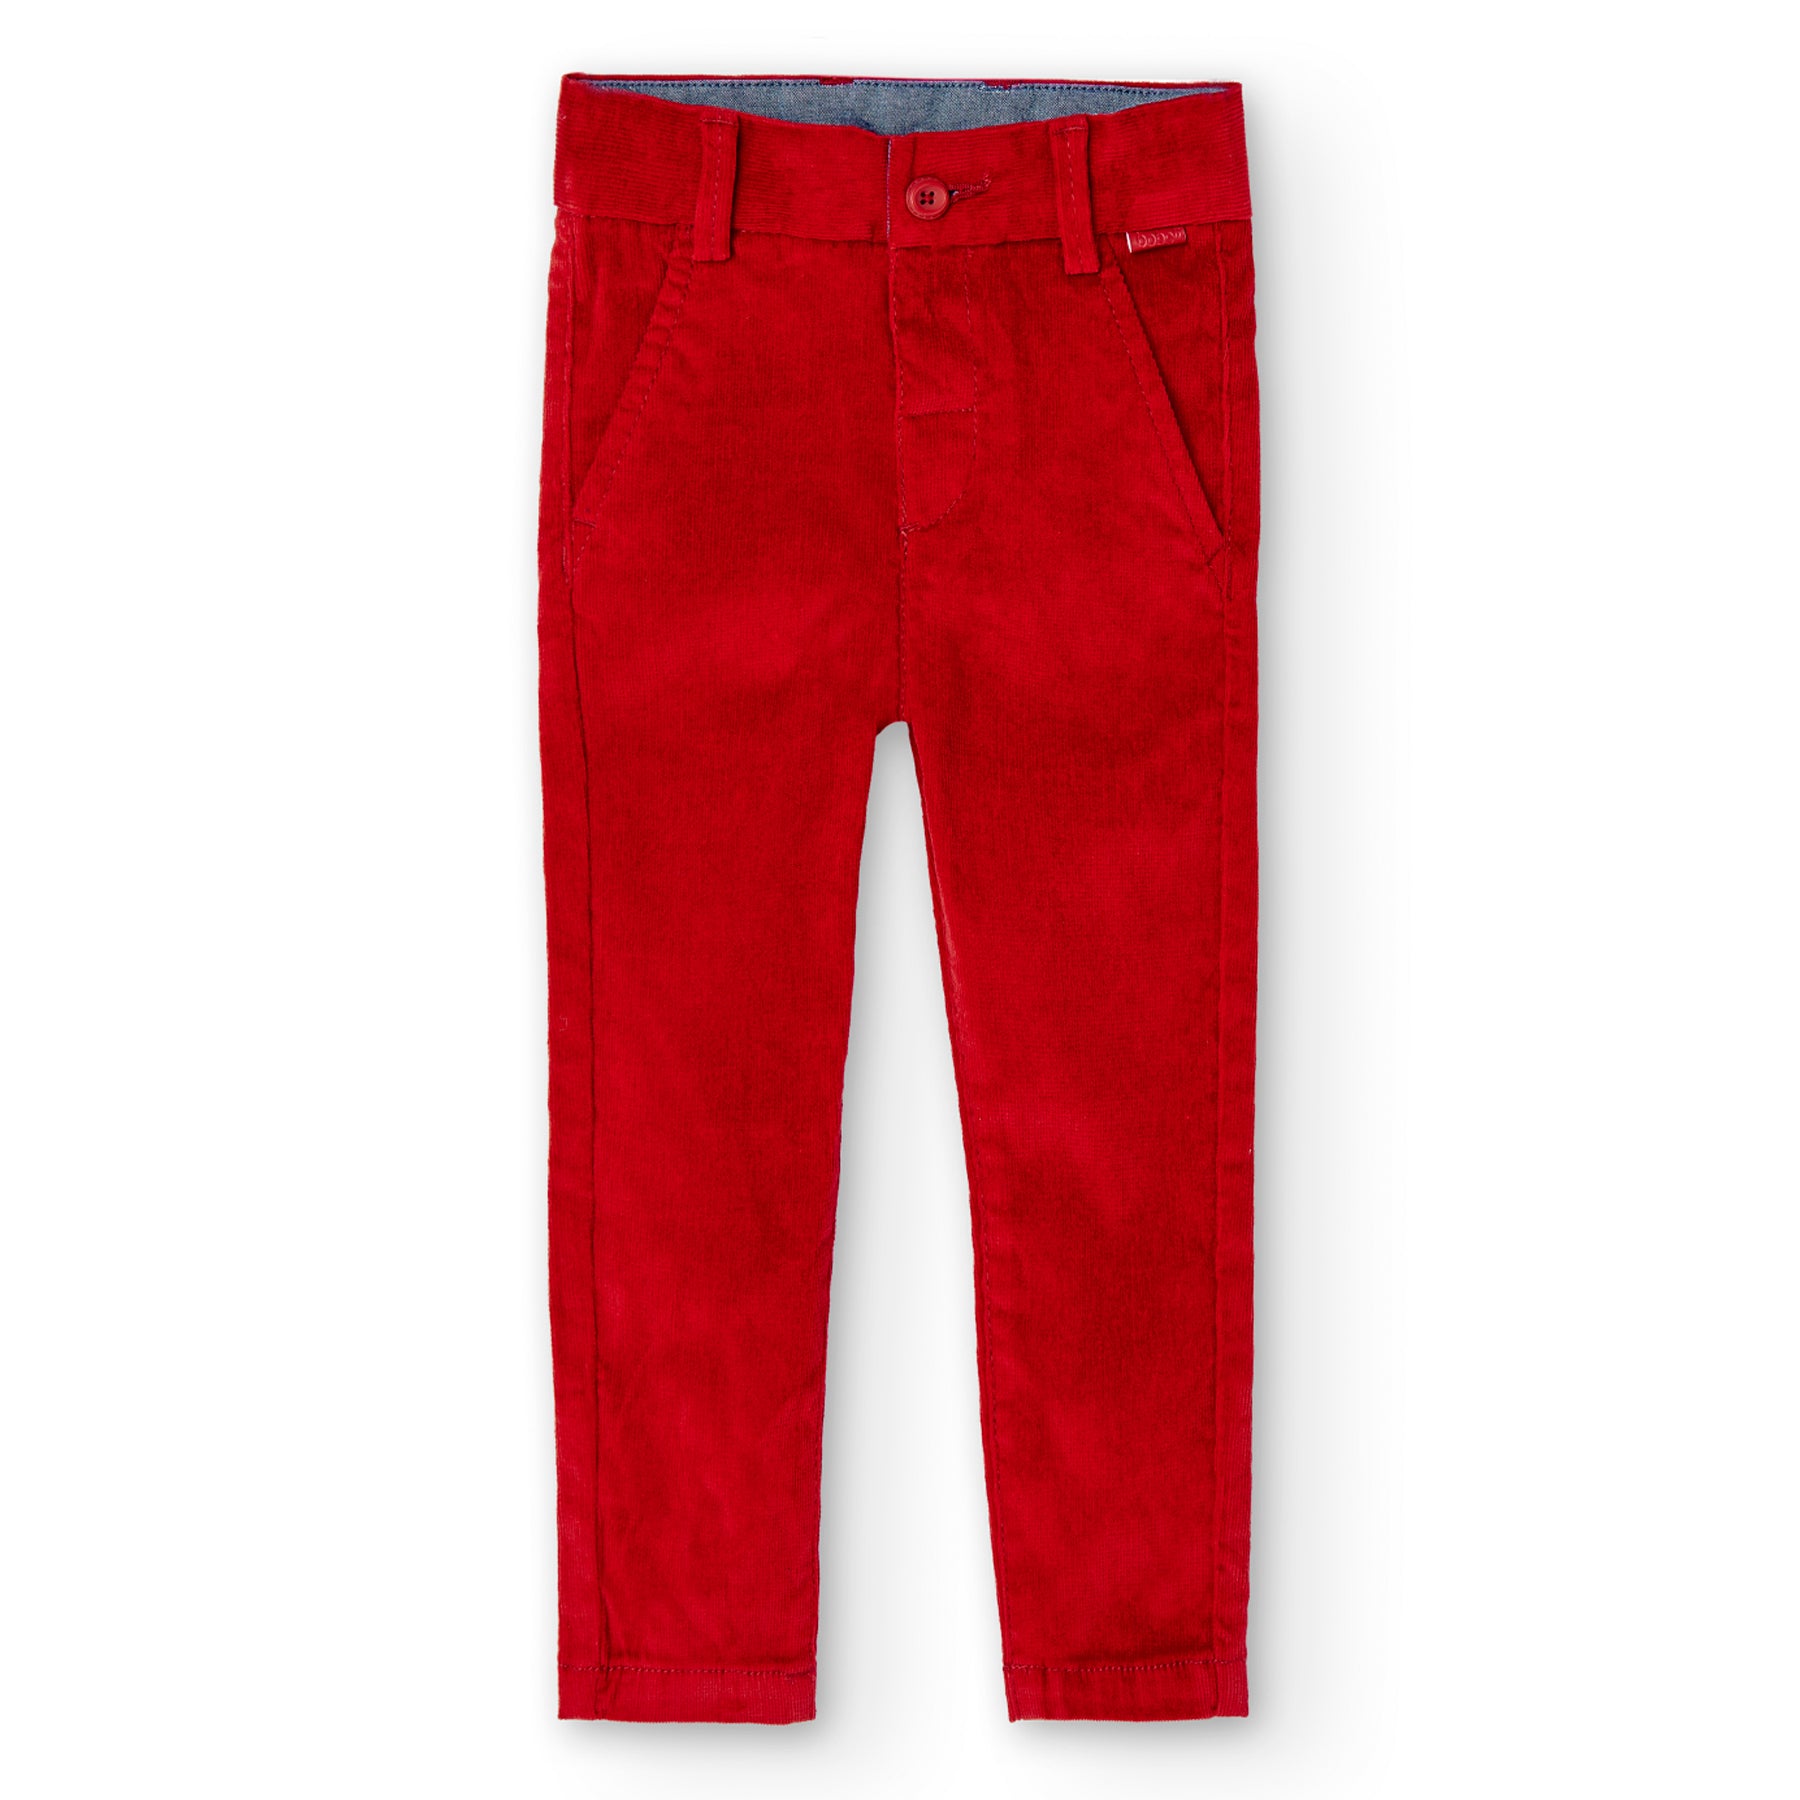 Pantalón vestir micropana rojo mini niño